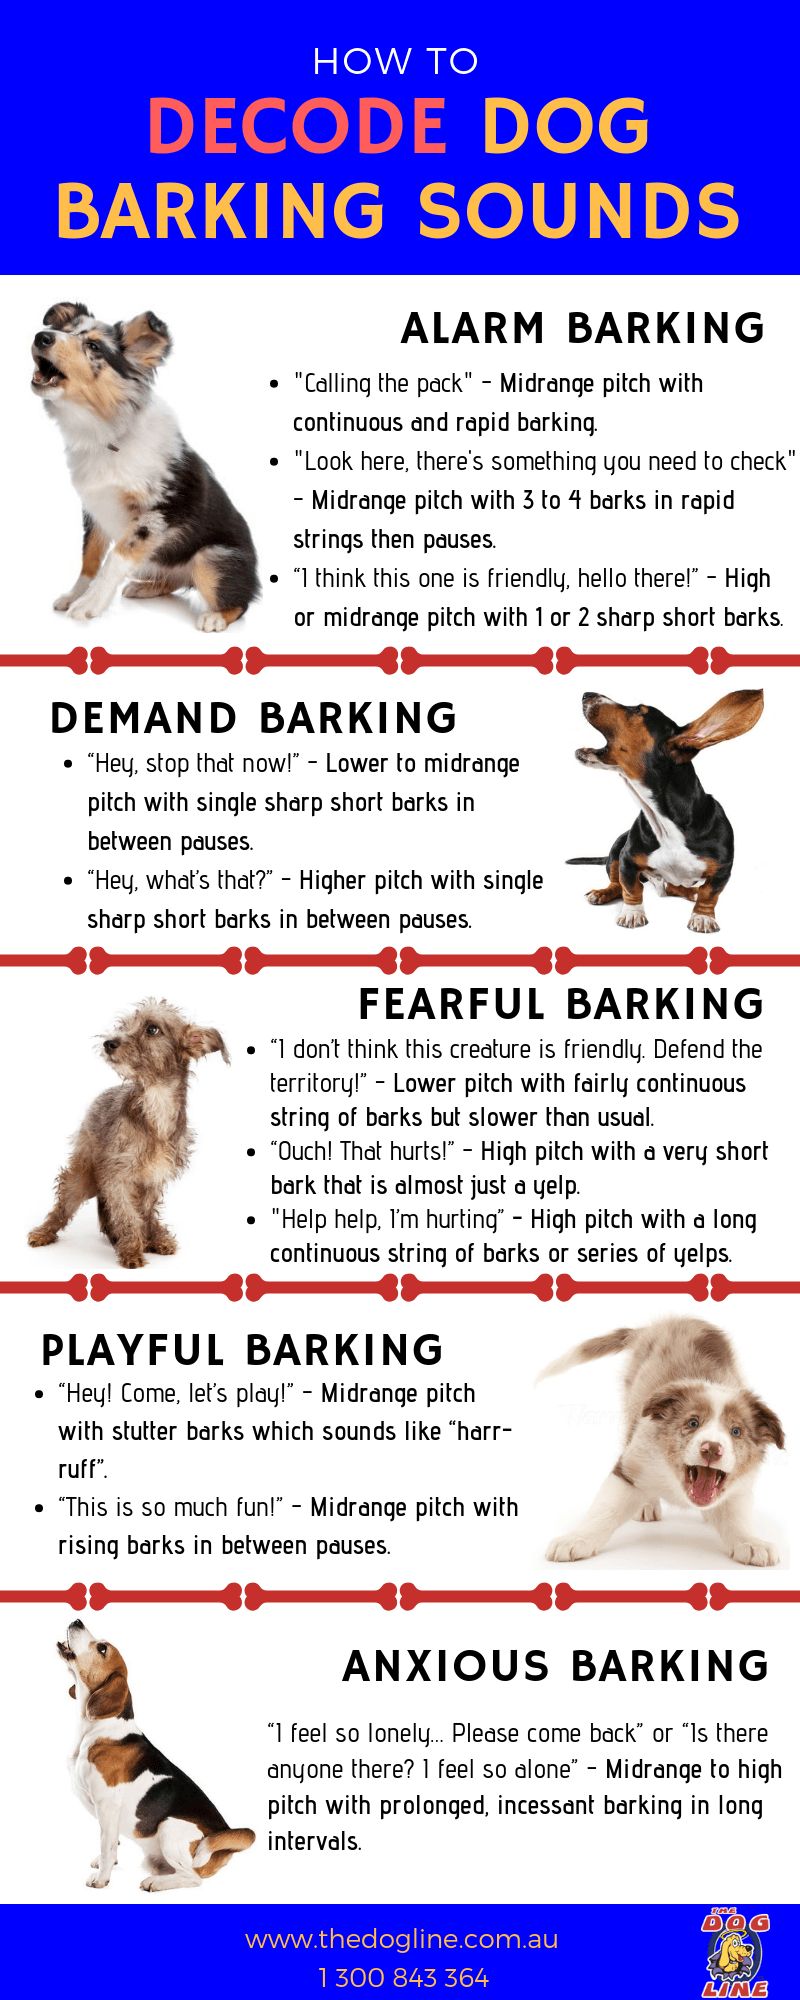 I. Introduction to Dog Barks